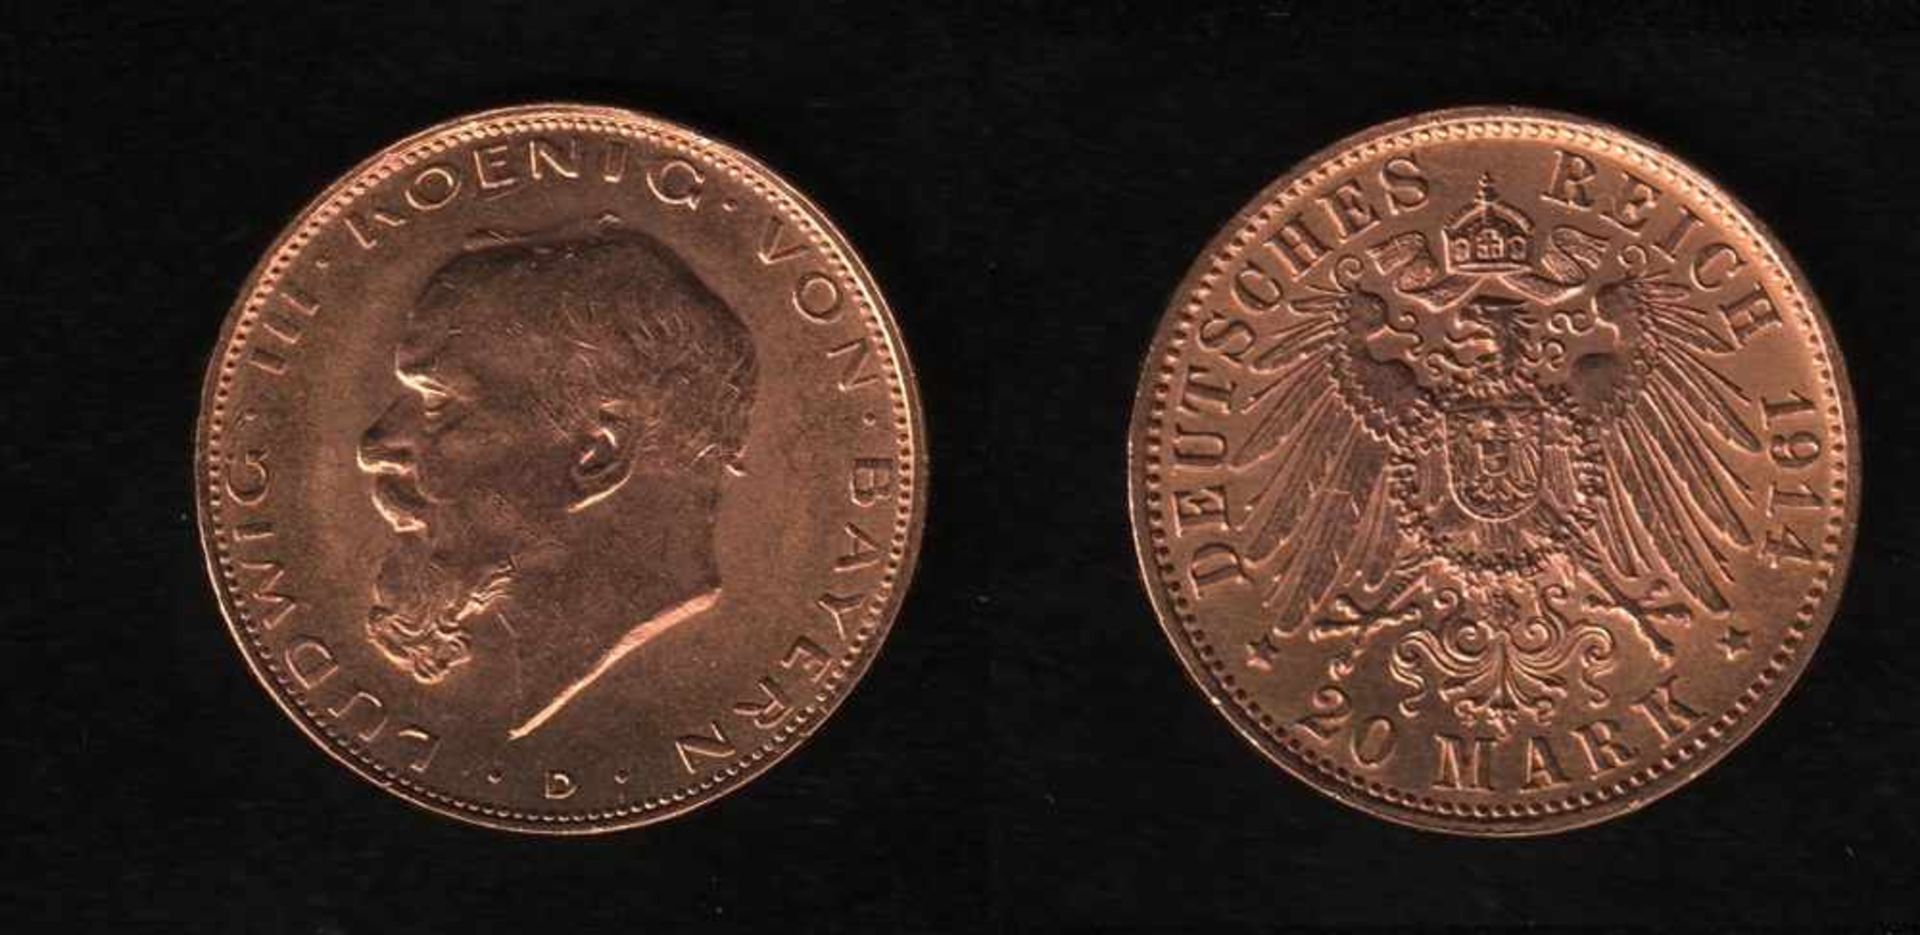 Deutsches Reich. Goldmünze.20 Mark. Ludwig III., König von Bayern. D 1914. Vorderseite: Porträt